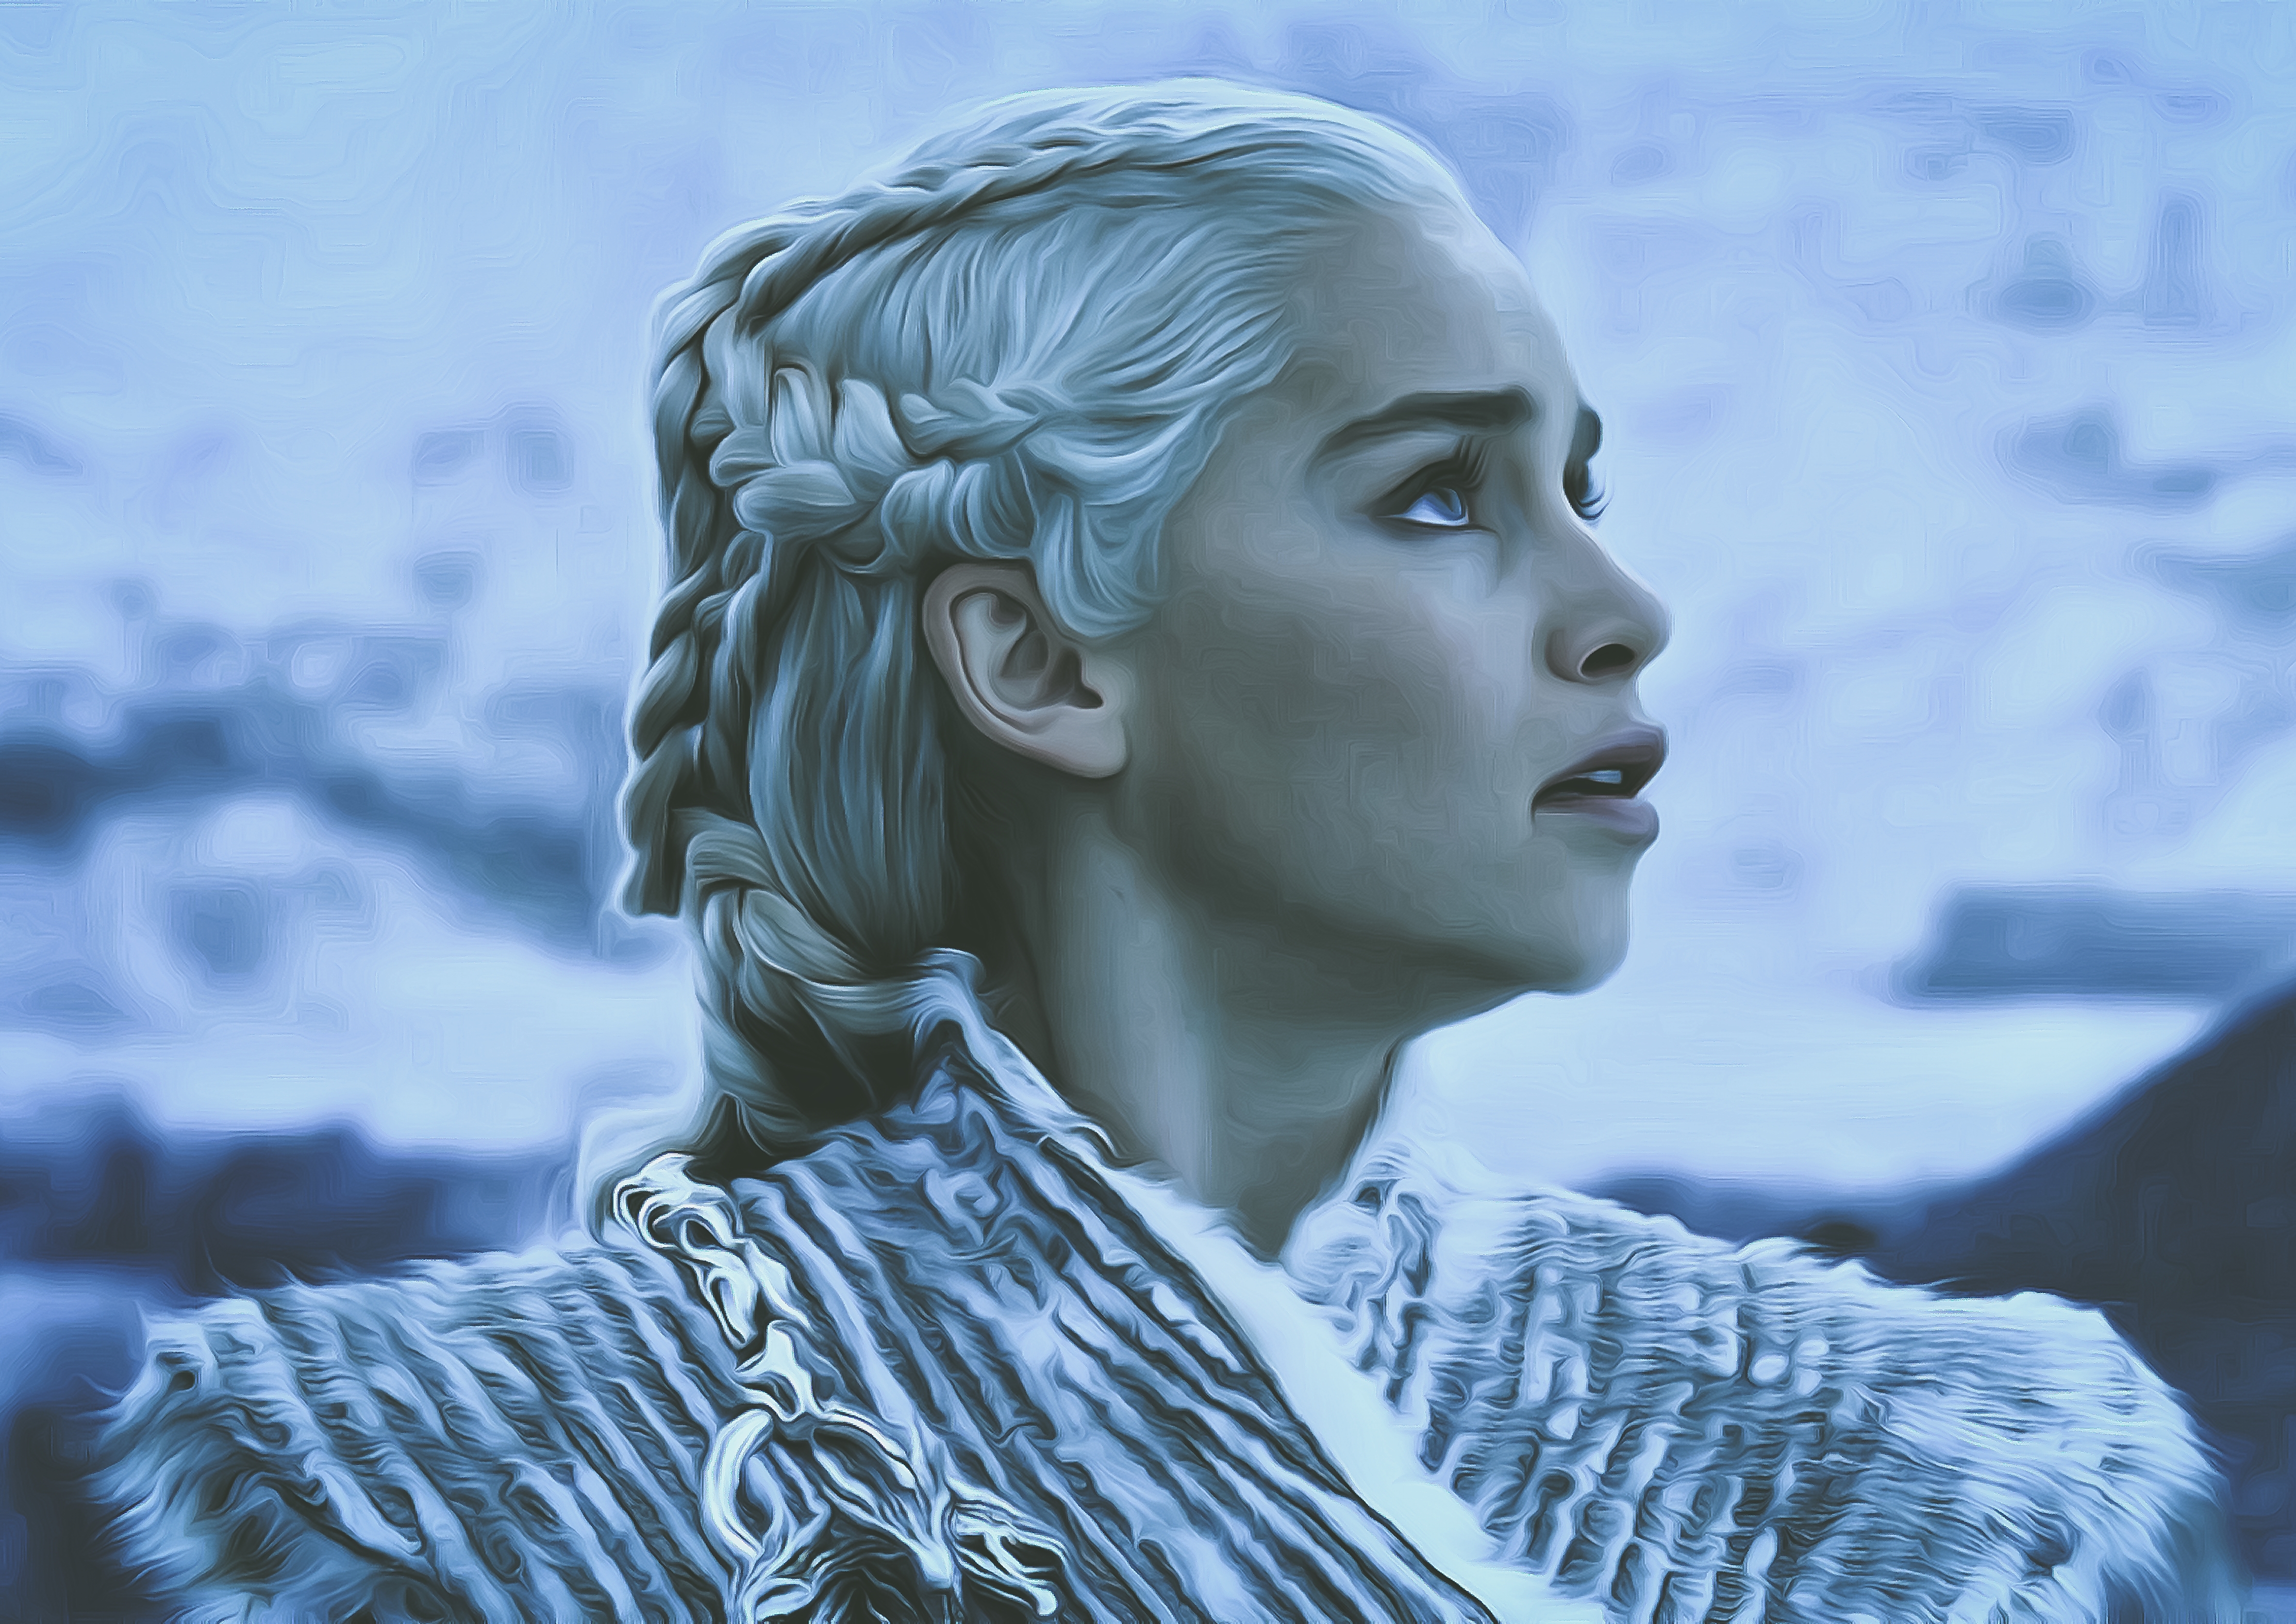 Daenerys Targaryen Game Of Thrones Season 8 Poster Wallpapers